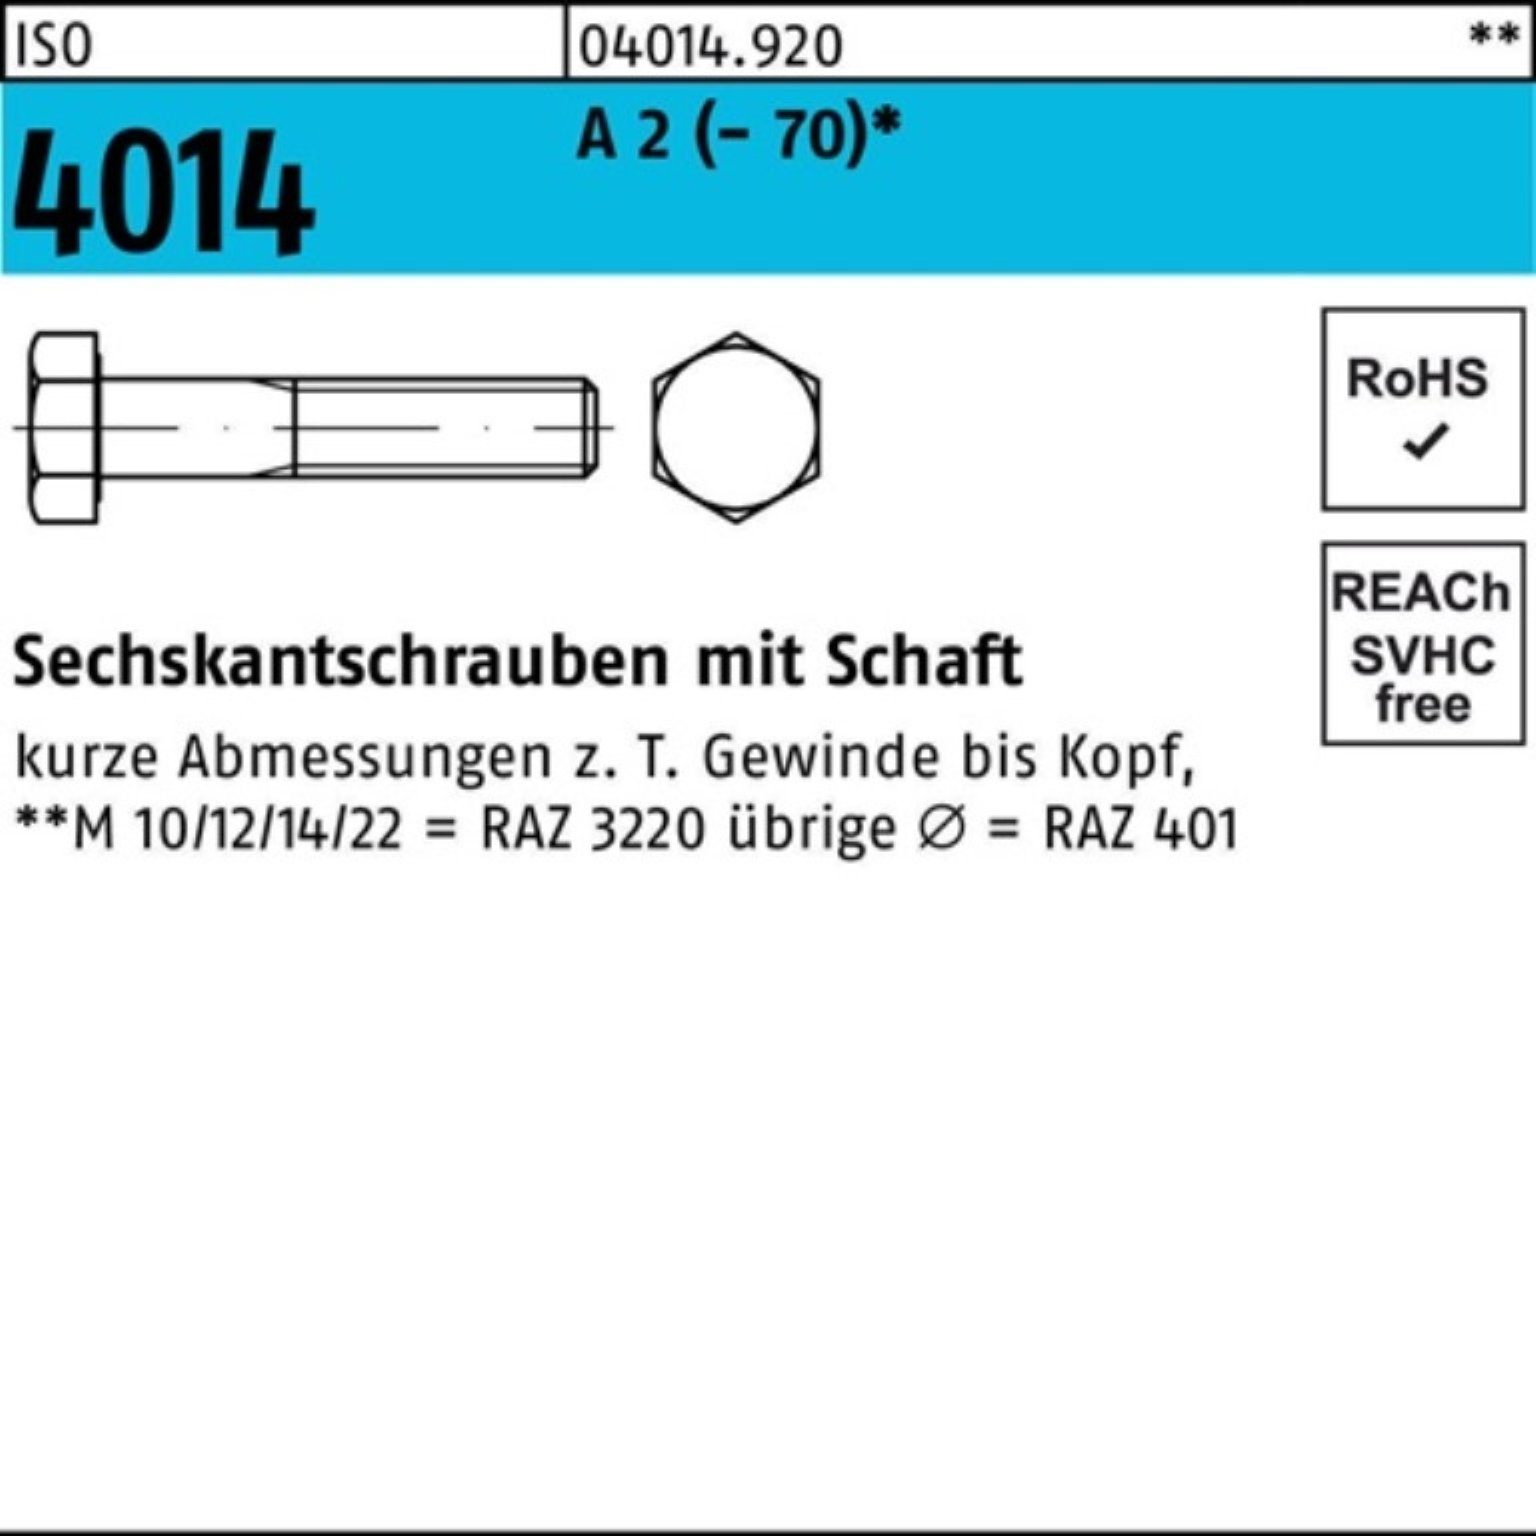 Bufab Sechskantschraube 100er Pack Sechskantschraube M27x 1 2 110 St (70) ISO A Schaft 4014